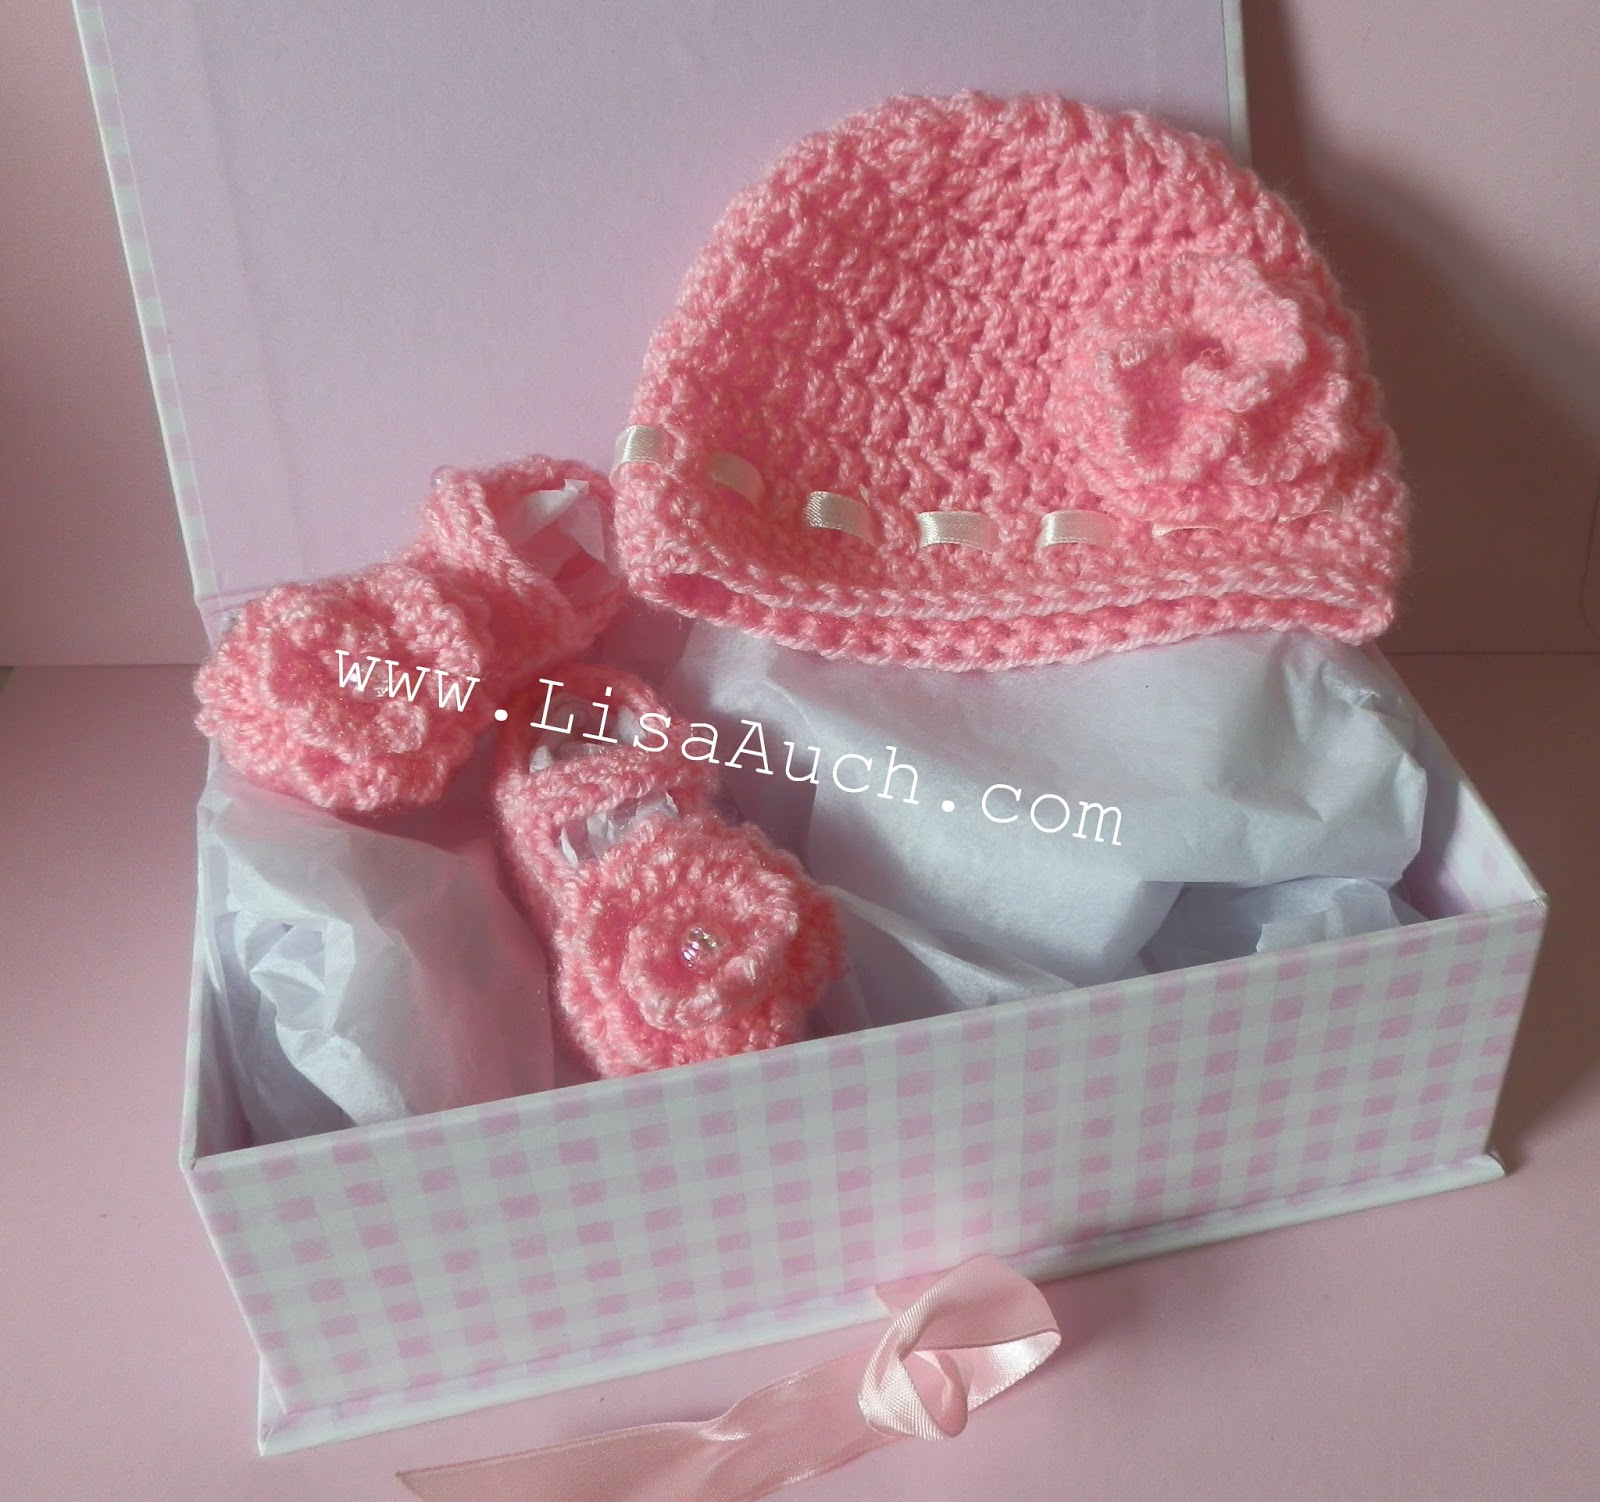 Easy Crochet Baby Hat Pattern Free Crochet Patterns And Designs Lisaauch Free Crochet Patterns